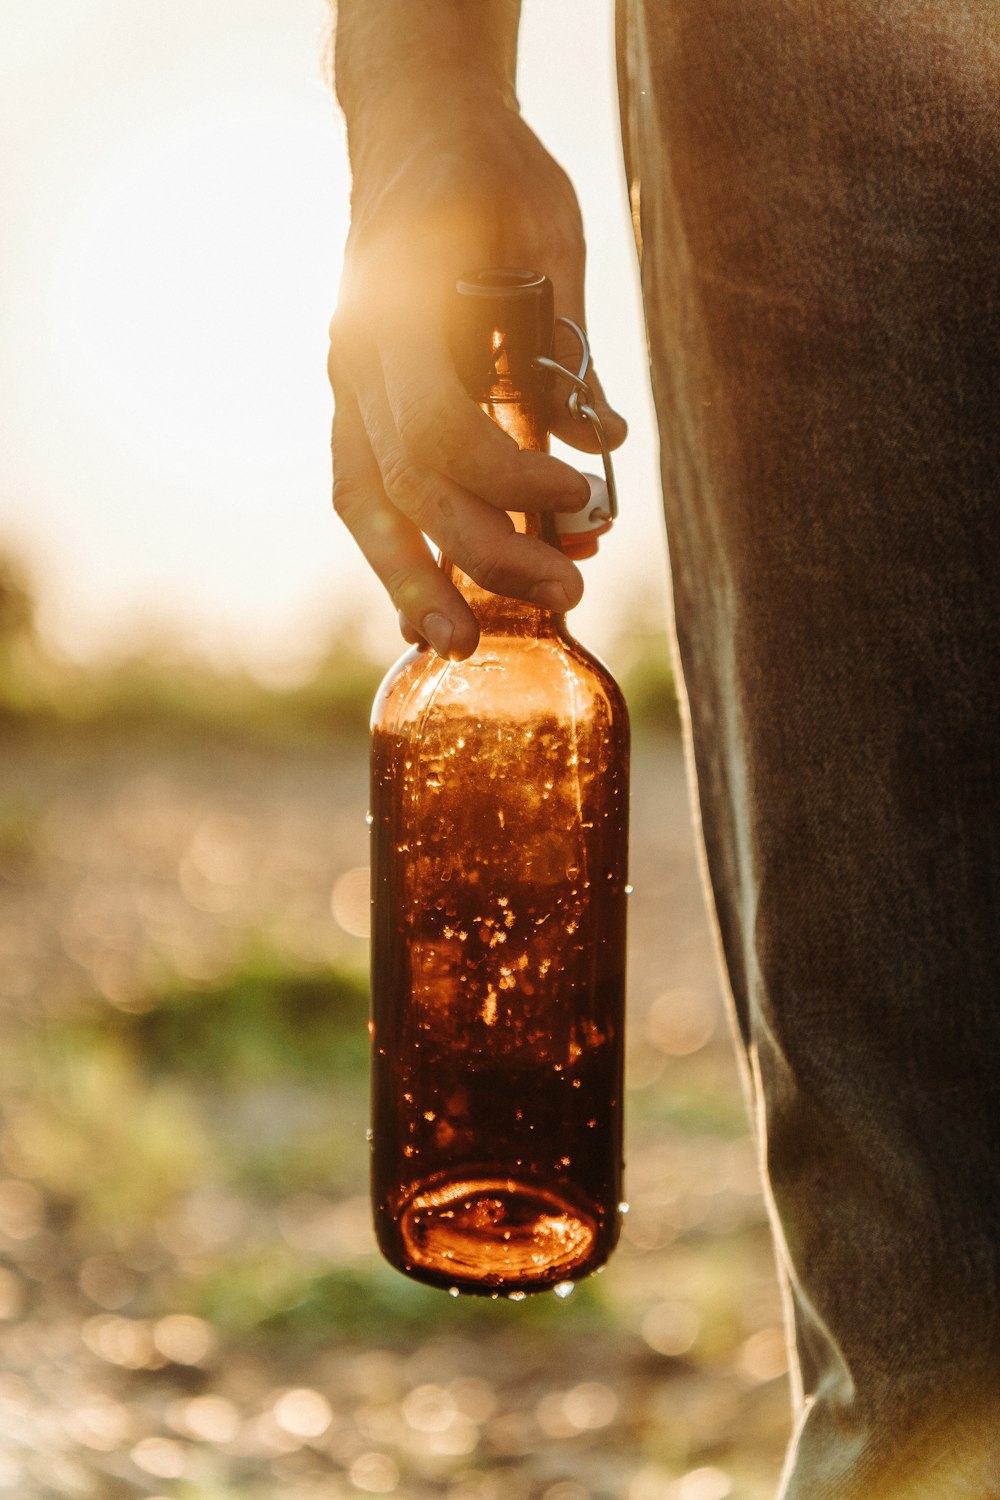 Una persona sosteniendo una botella marrón en la mano